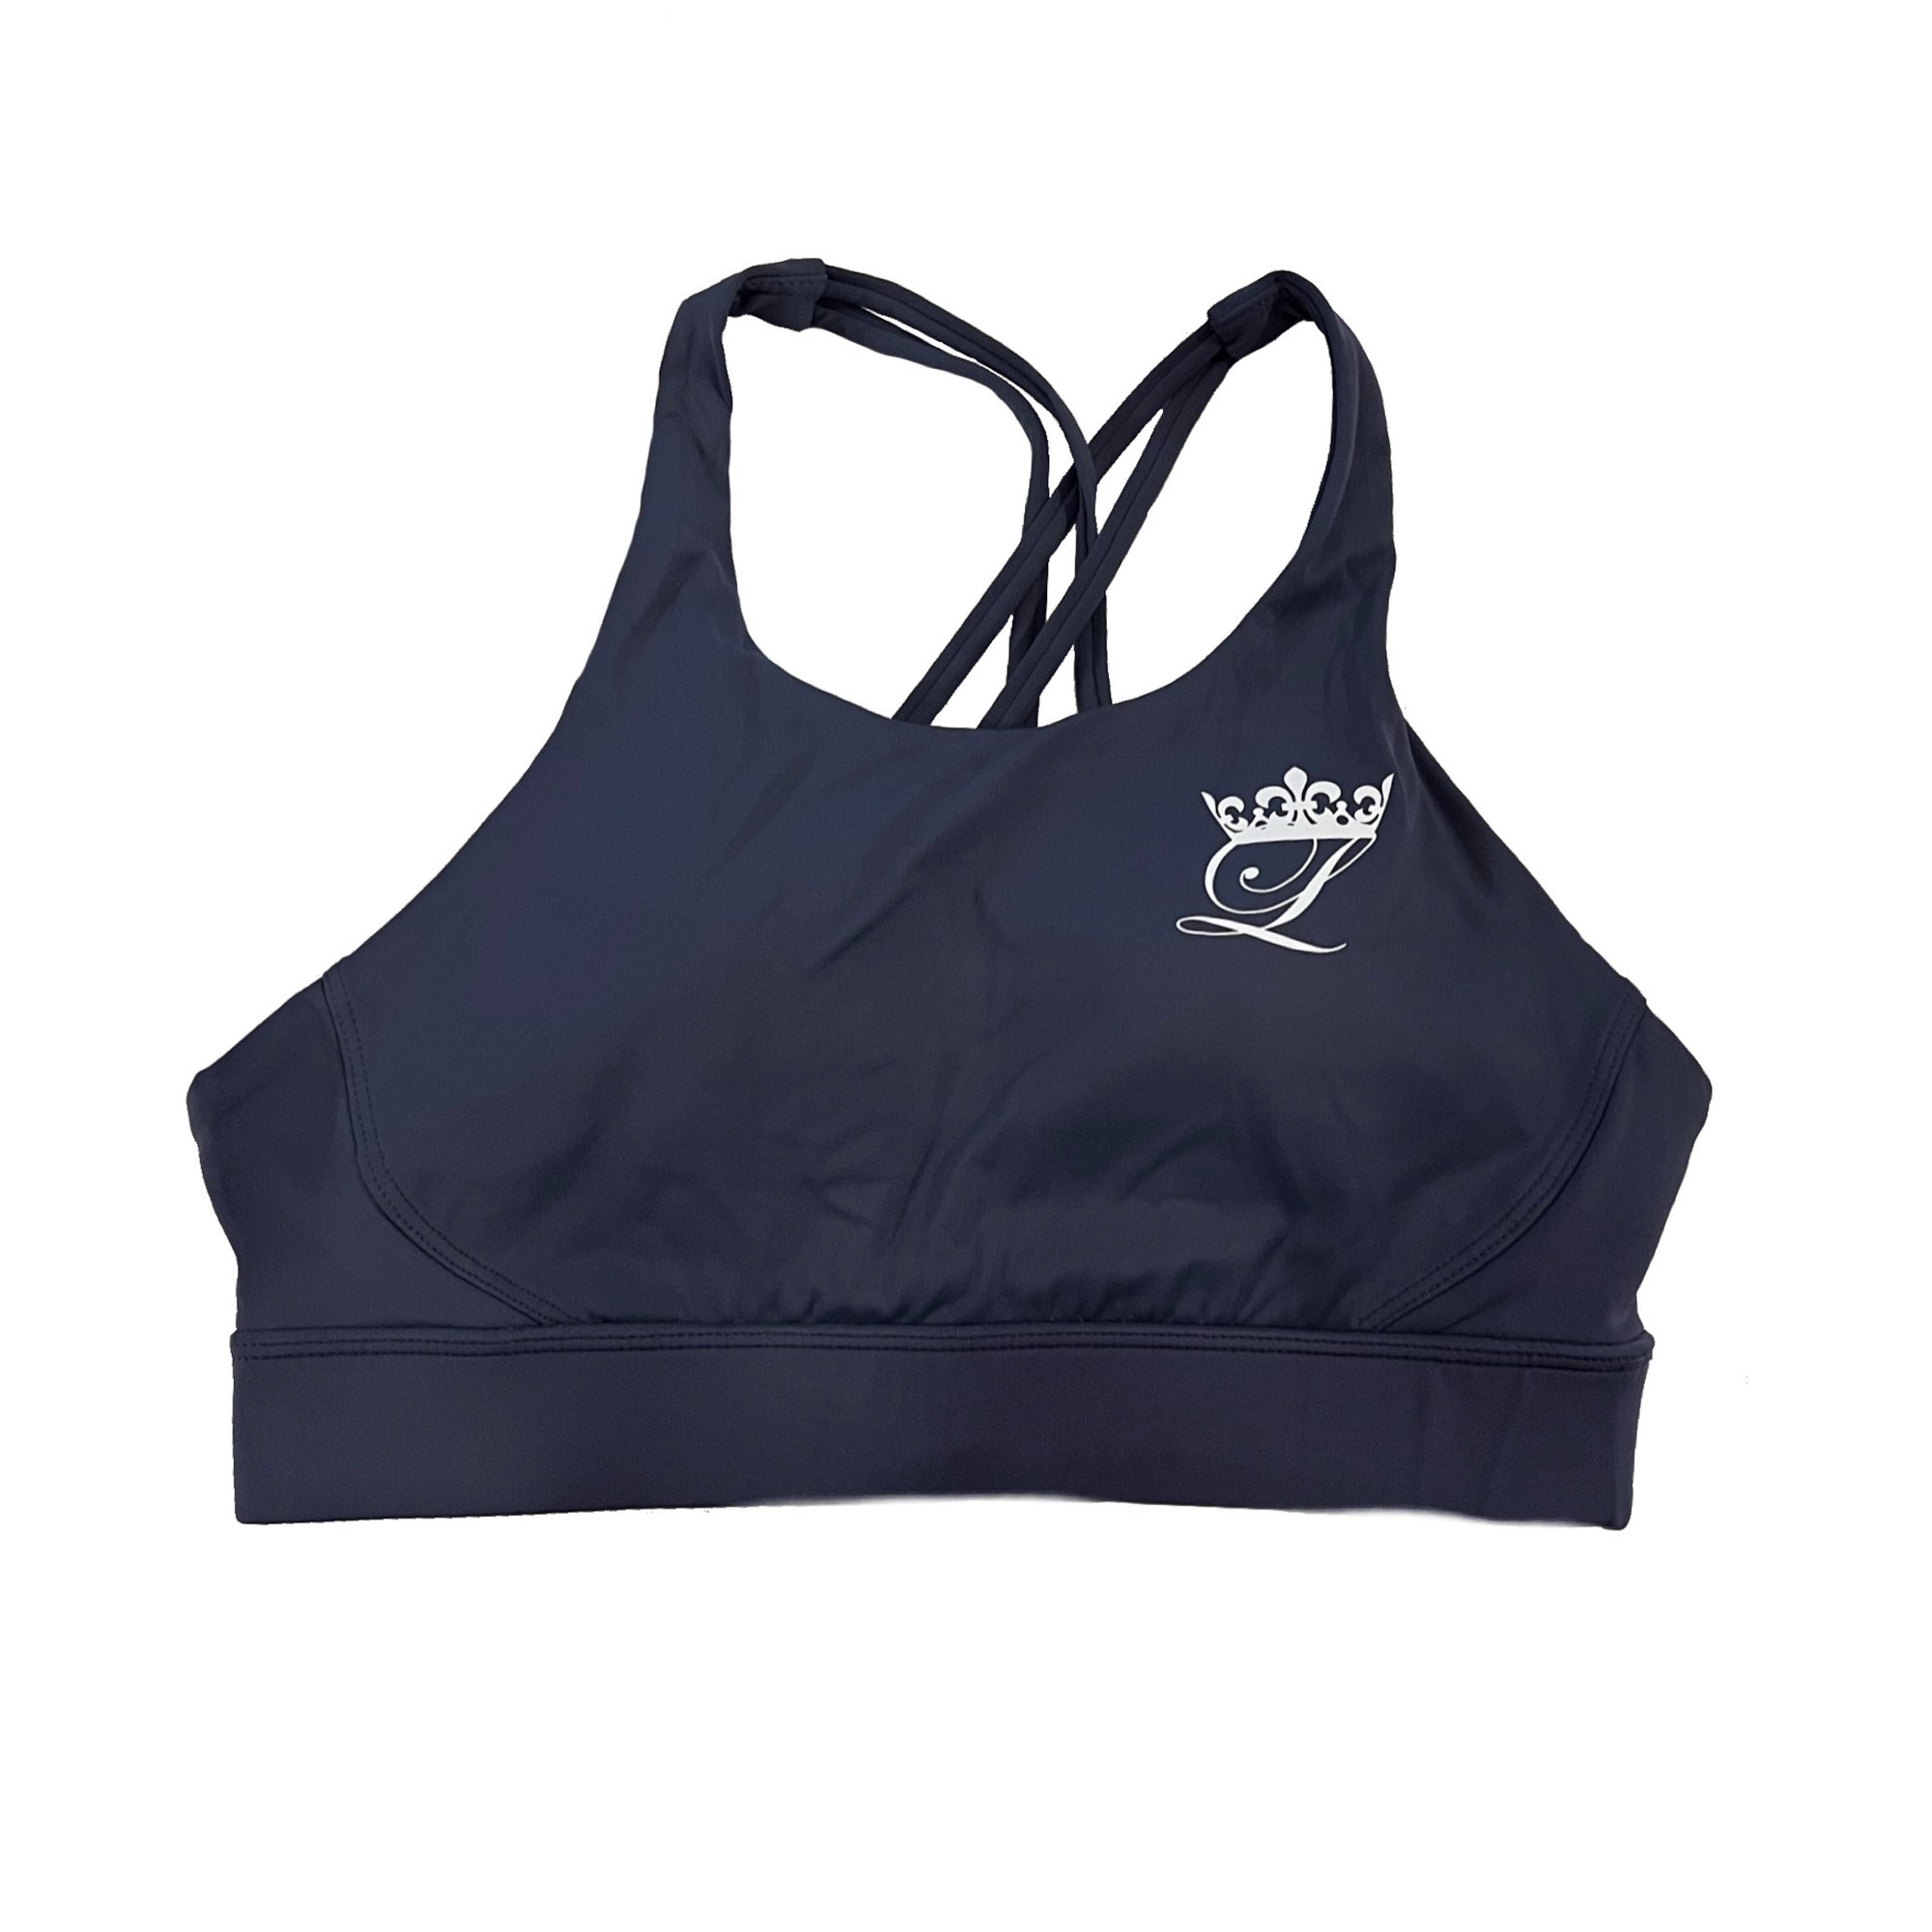 Navy Sports bra